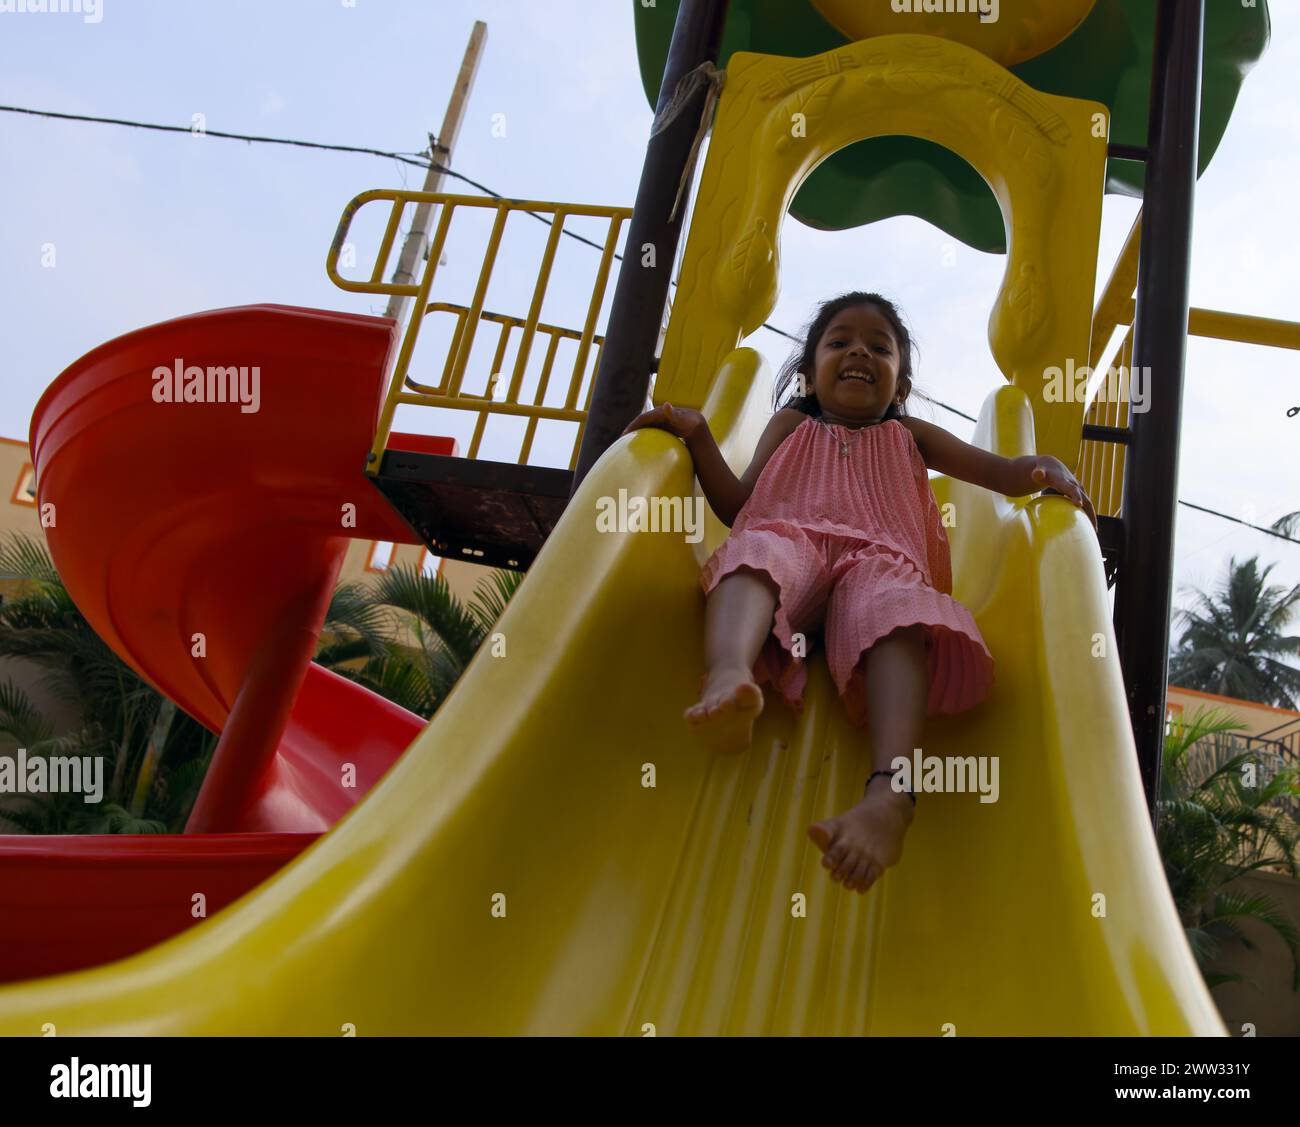 Une jeune fille rit avec plaisir alors qu'elle zoome sur un toboggan coloré à une aire de jeux ensoleillée Banque D'Images